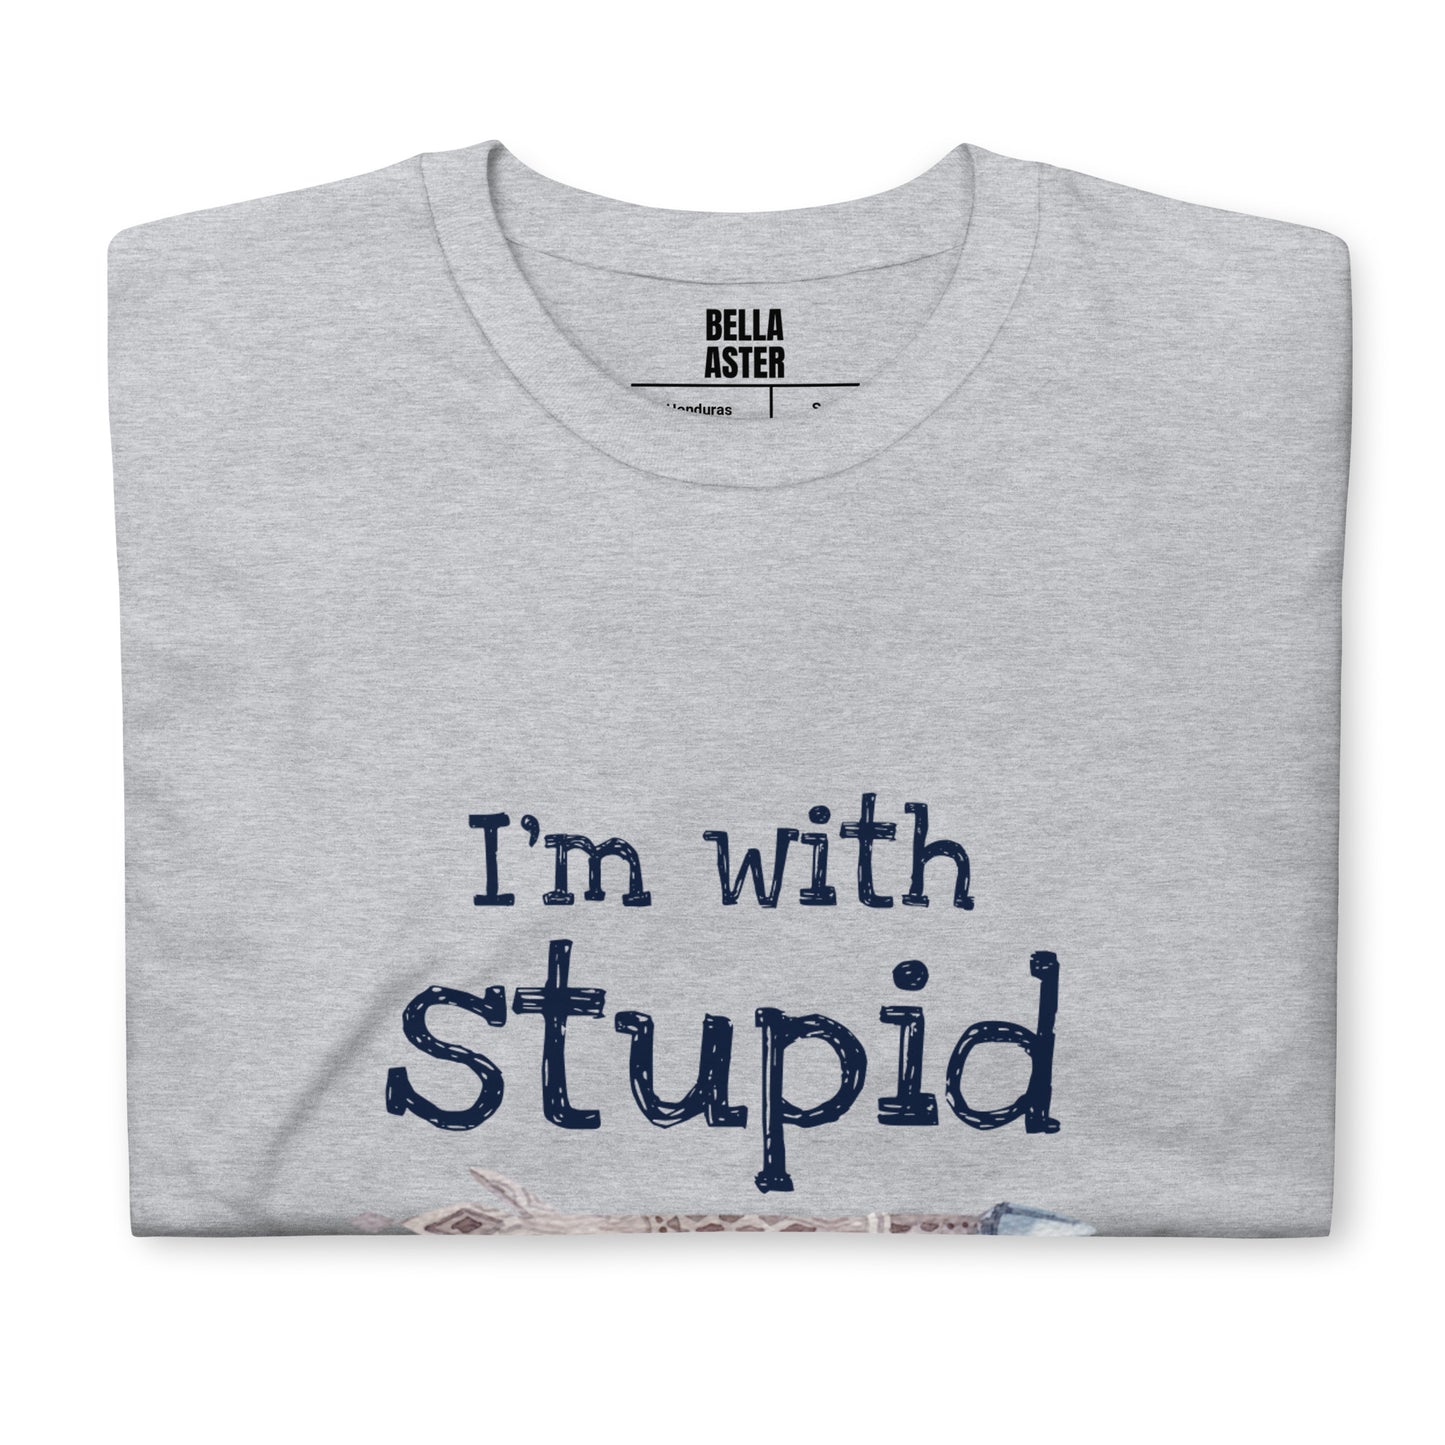 I'm With Stupid Unisex T-Shirt